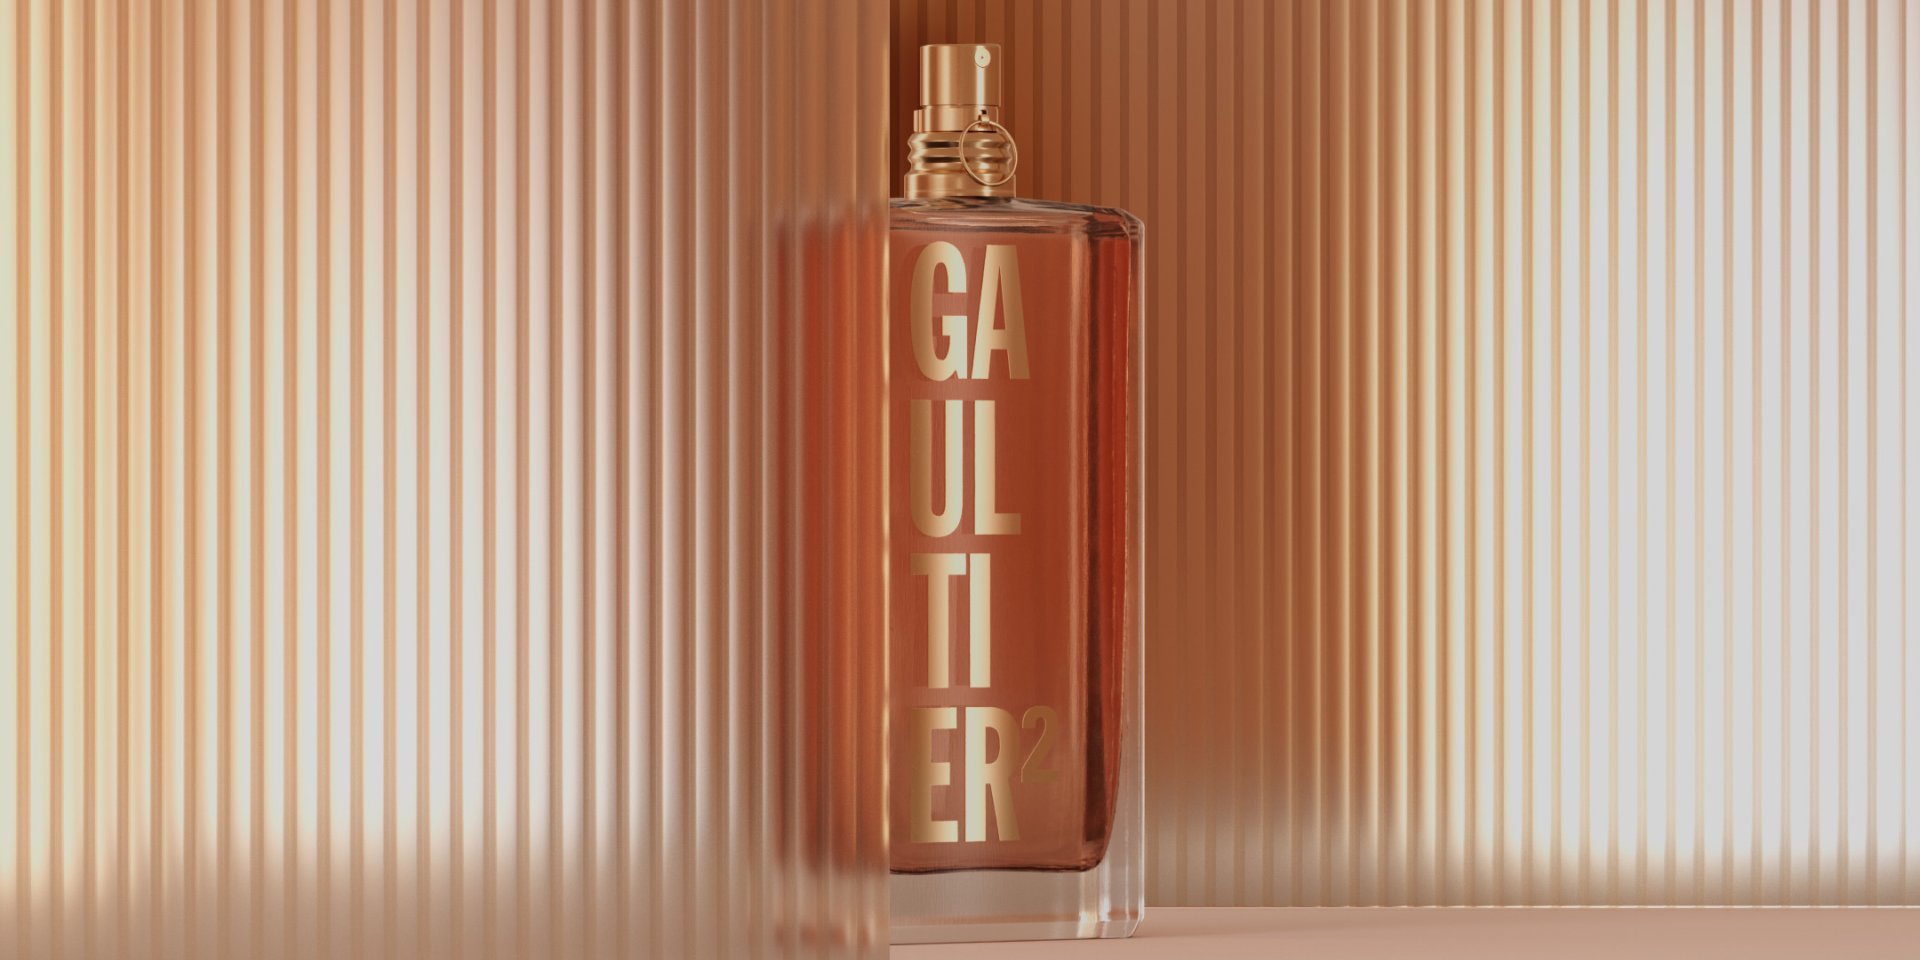 Visuel du flacon Gaultier Eau de Parfum Jean Paul Gaultier